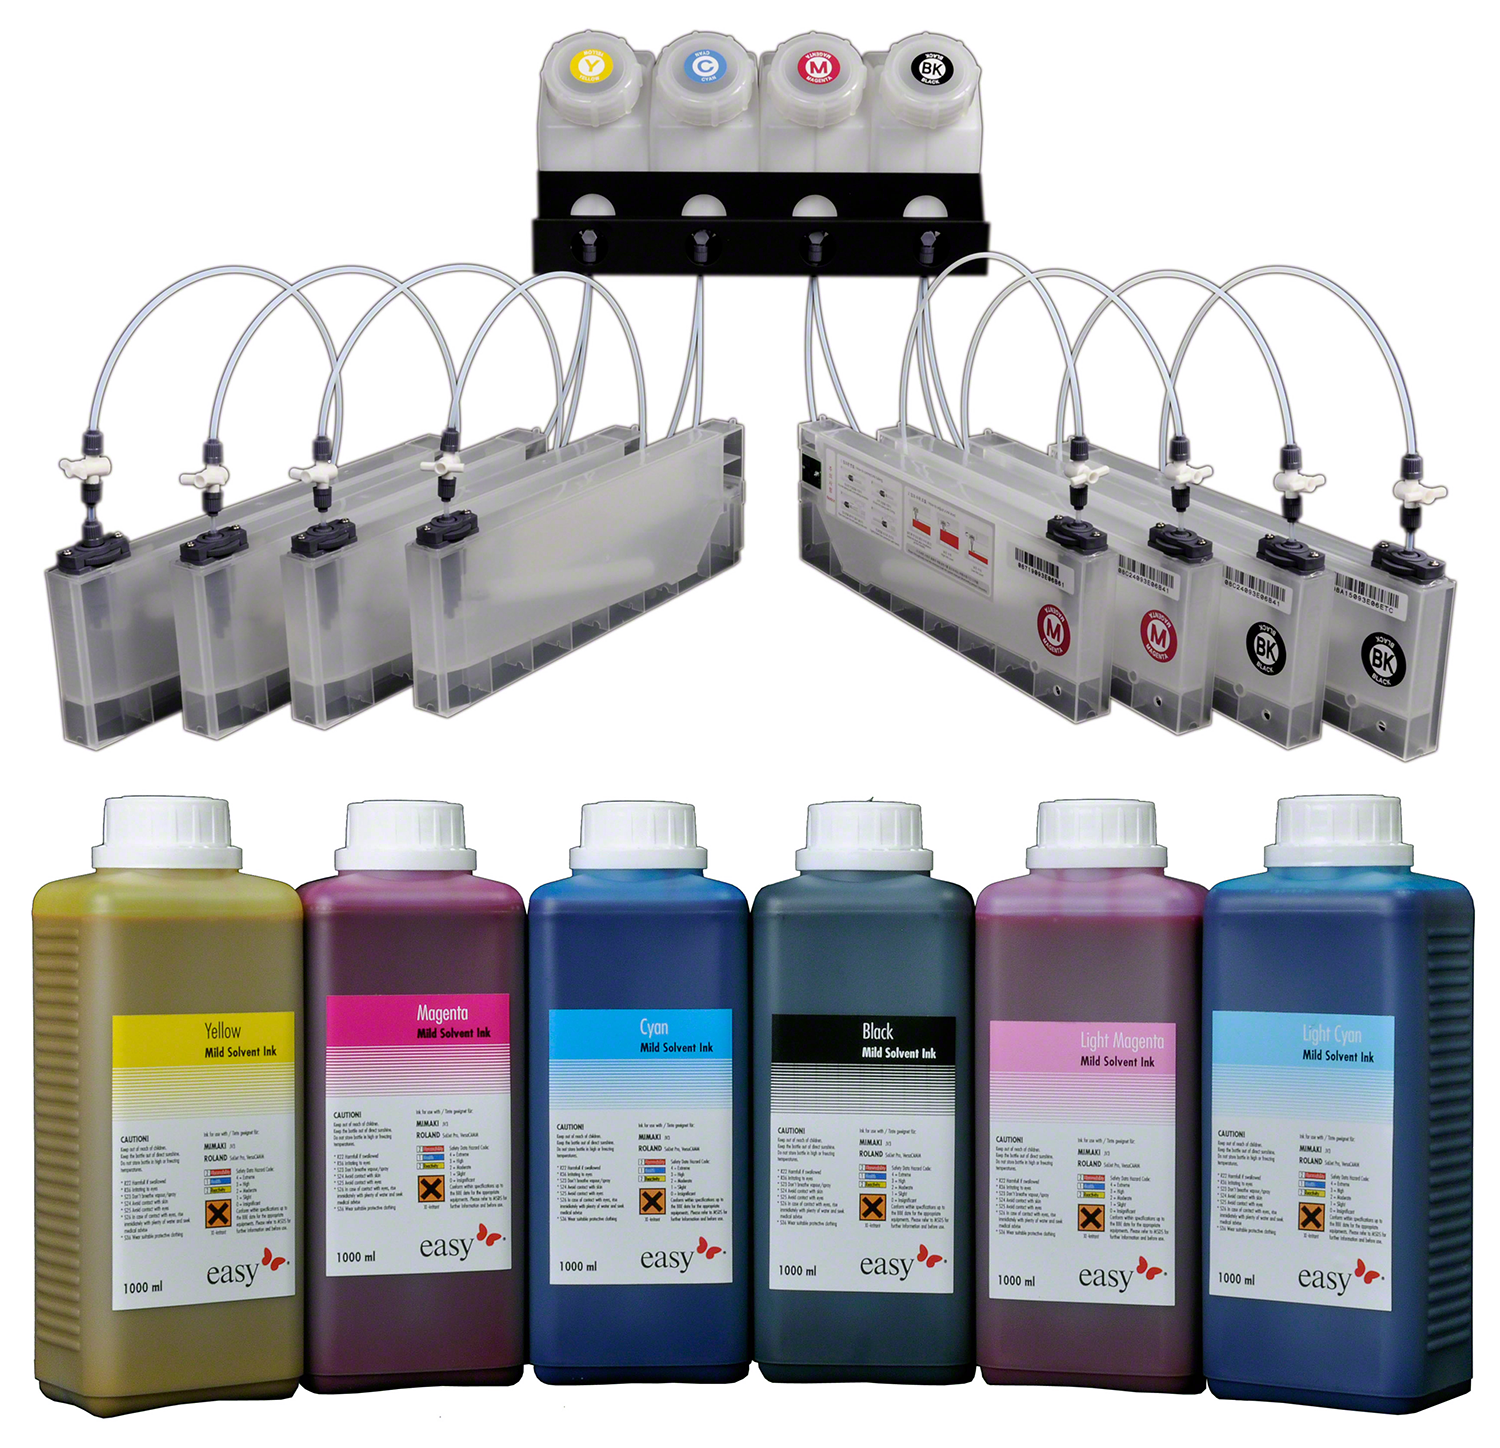 Paketangebot easyTank für Roland VS-i Serie mit 7 Farben + 1 Cleaning, inkl. 1 Liter Tinte pro Farbe + 1 Liter Cleaning